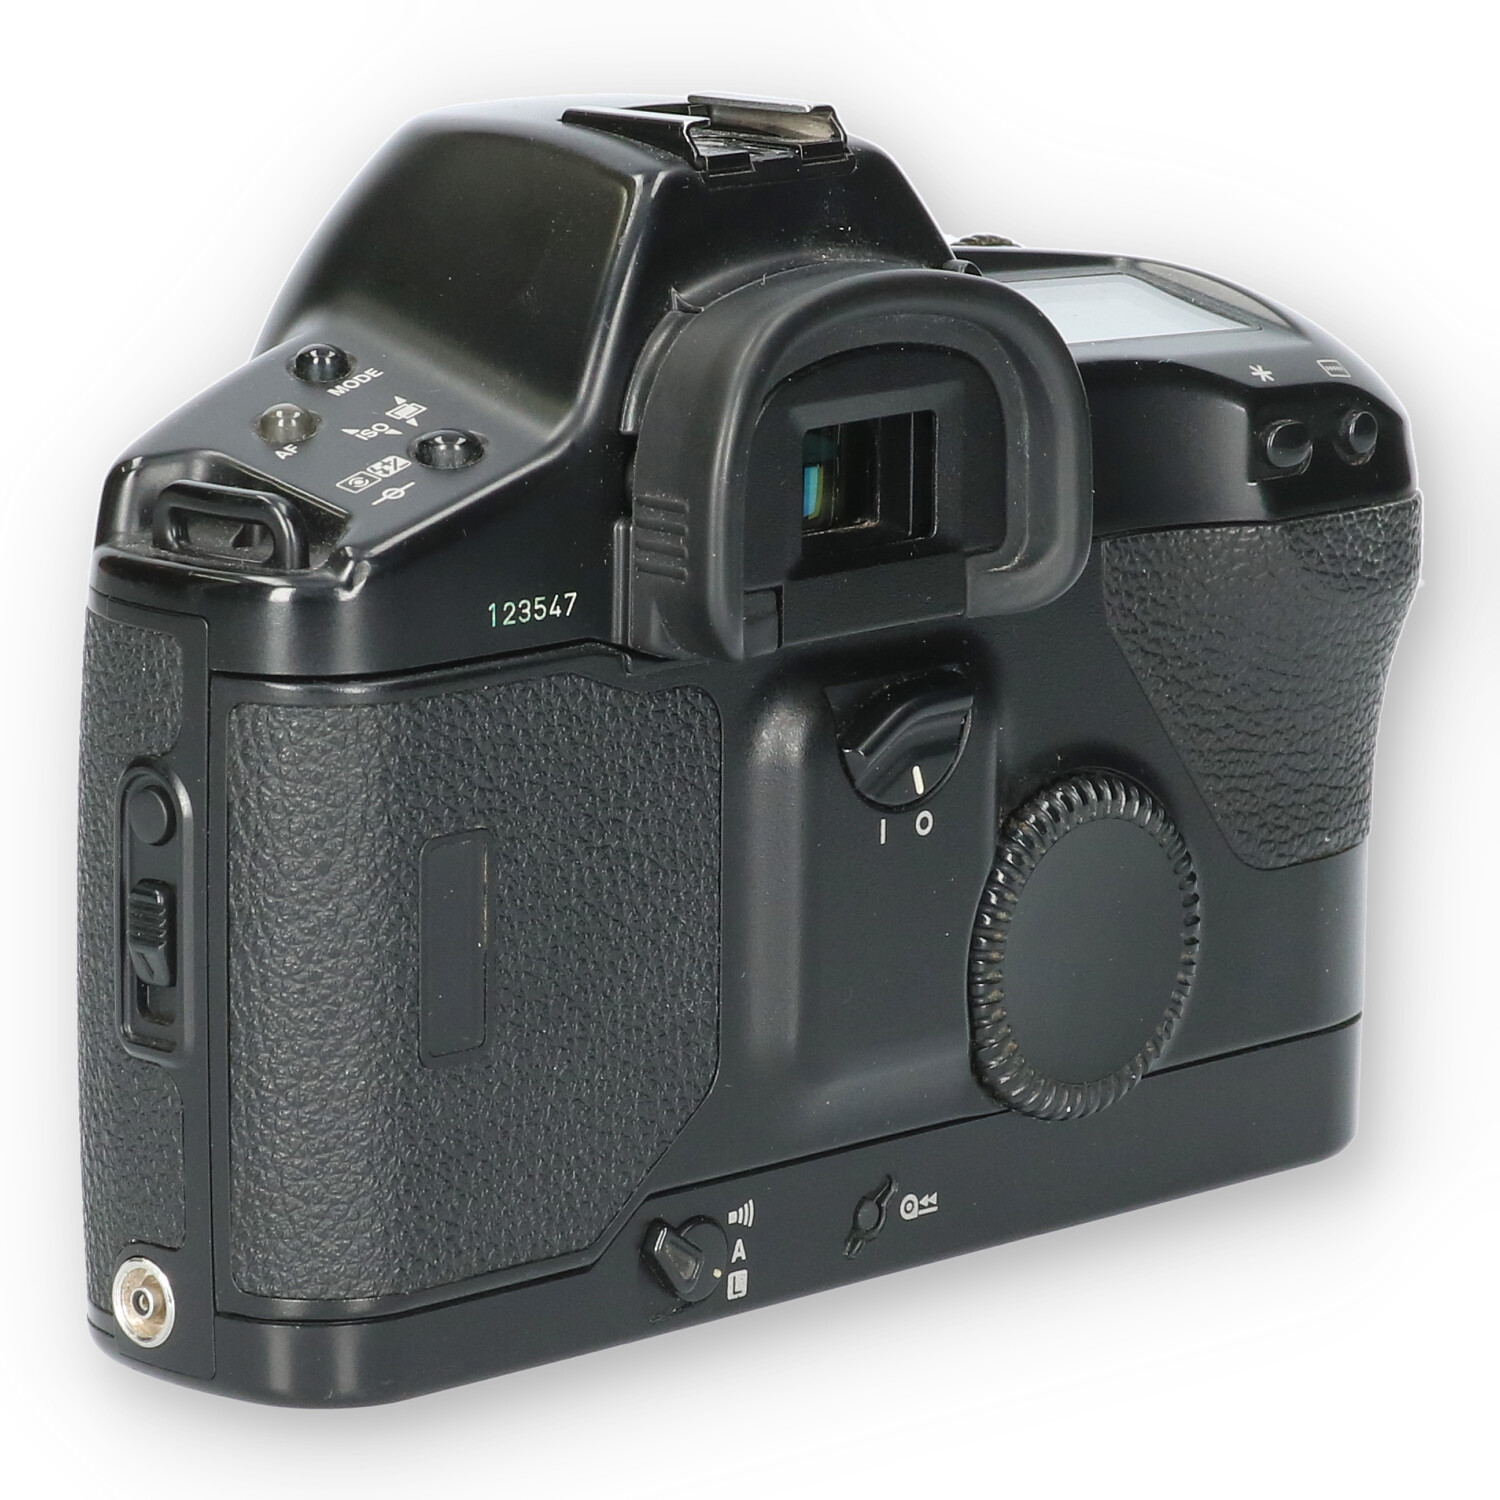 Canon Eos-1n body - No-Digital